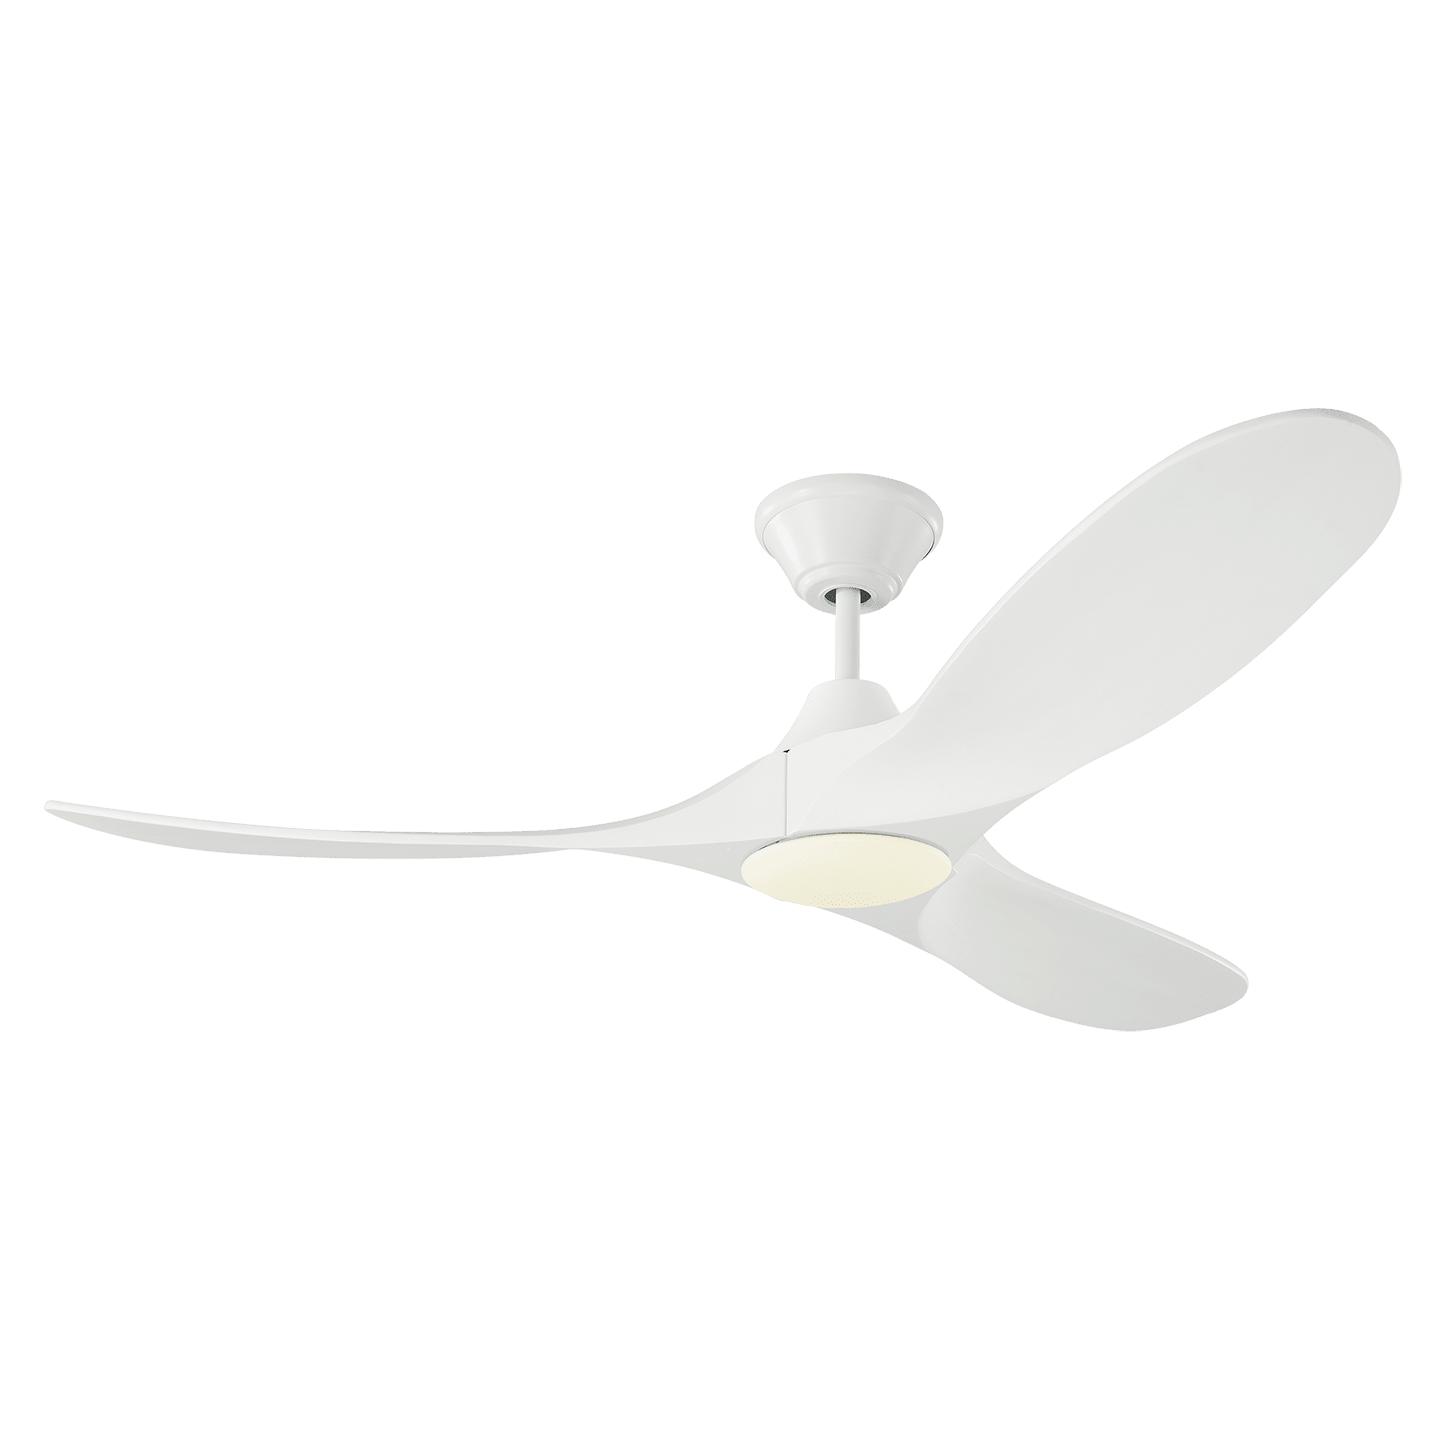 Купить Потолочный вентилятор Maverick 52" LED Ceiling Fan в интернет-магазине roooms.ru